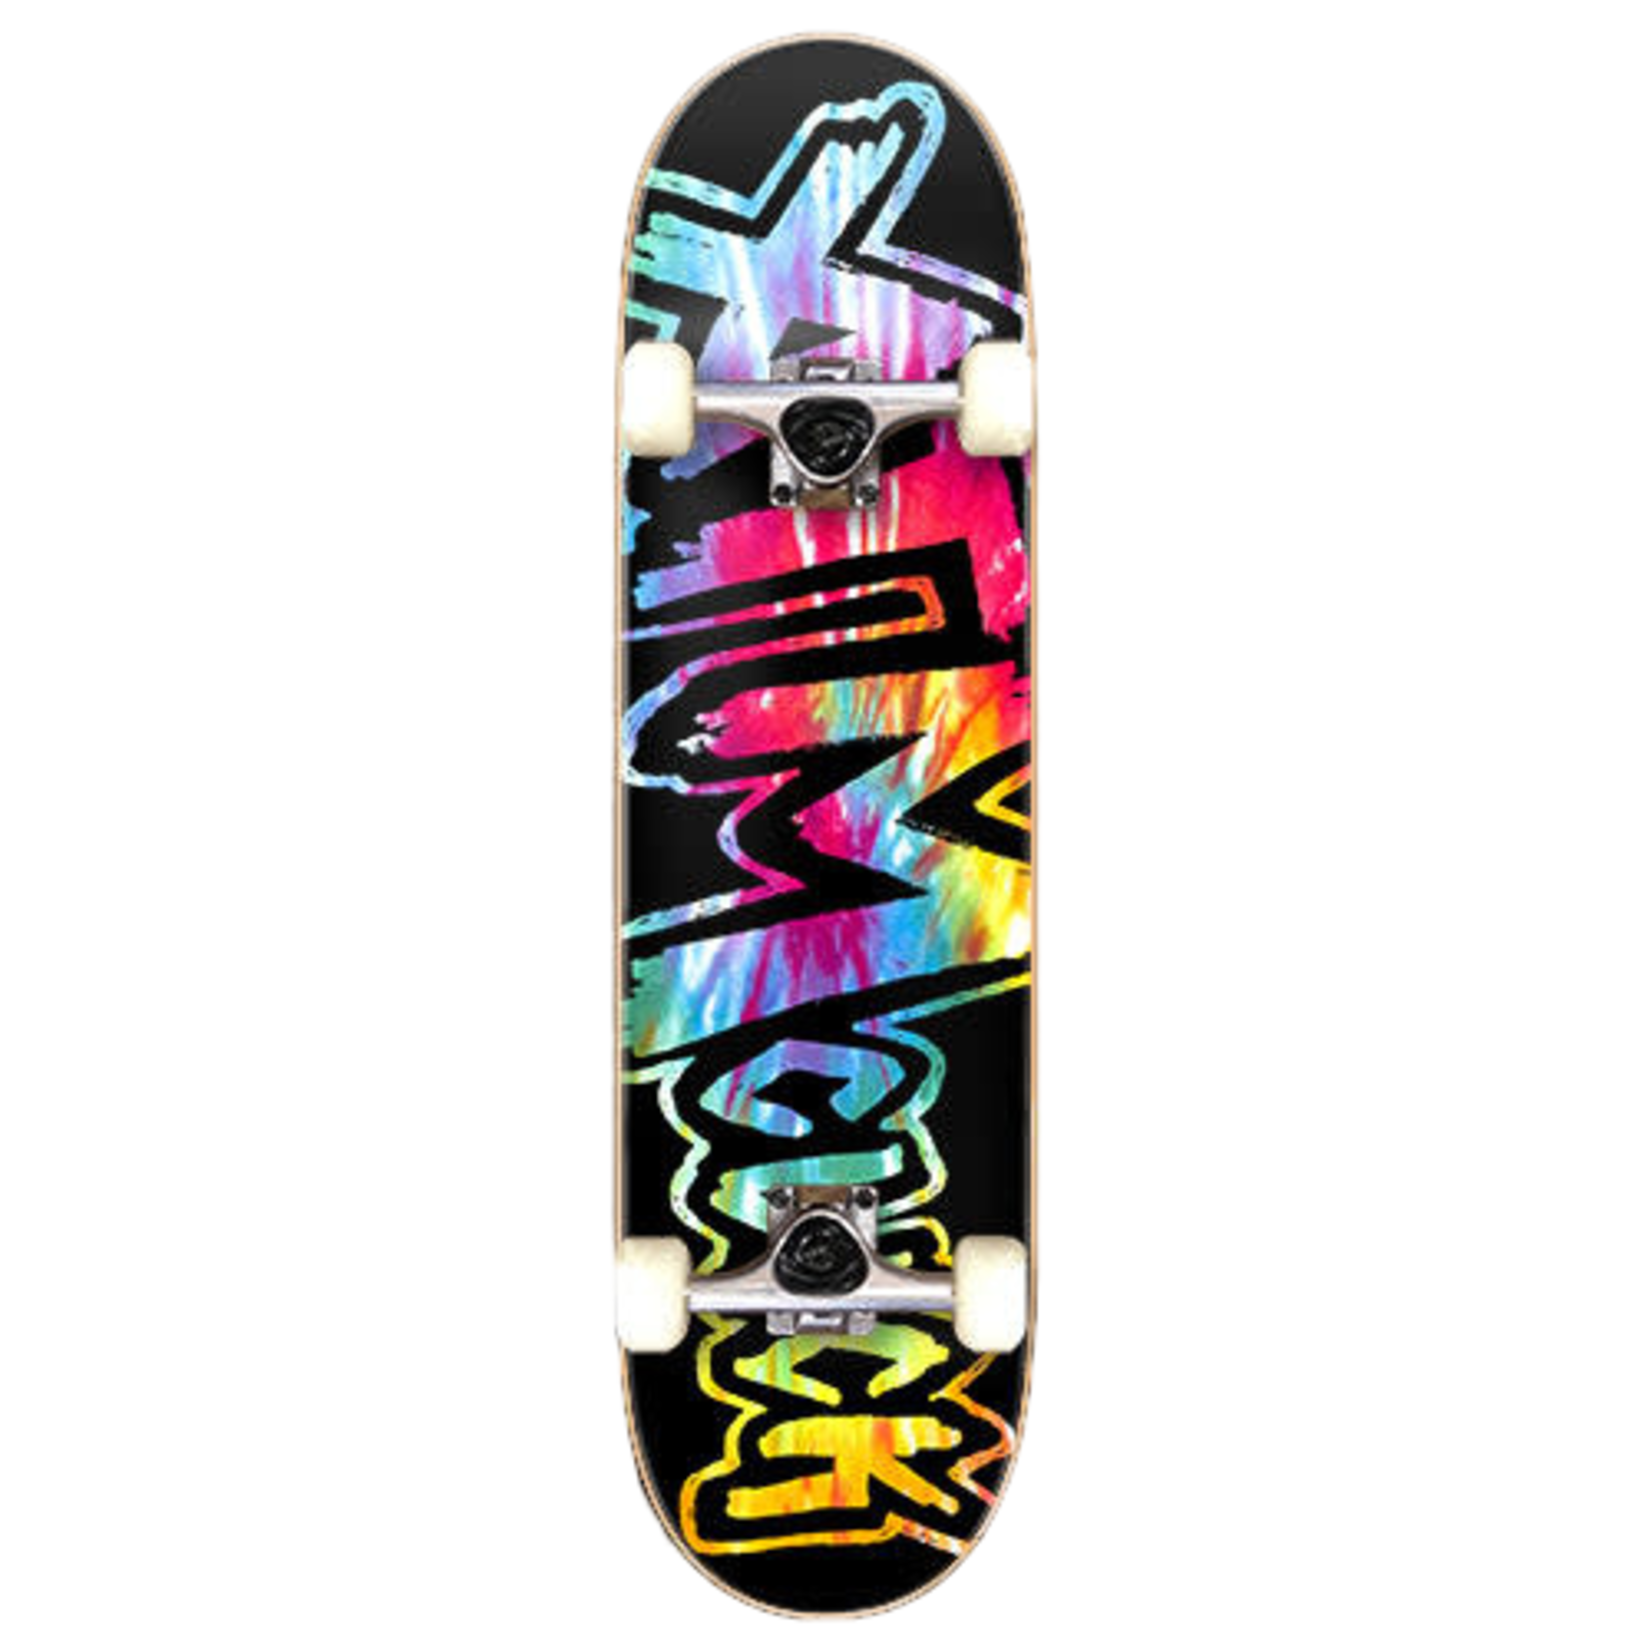 ATM ATM Skateboard Complete - Tie Dye - 8.125"